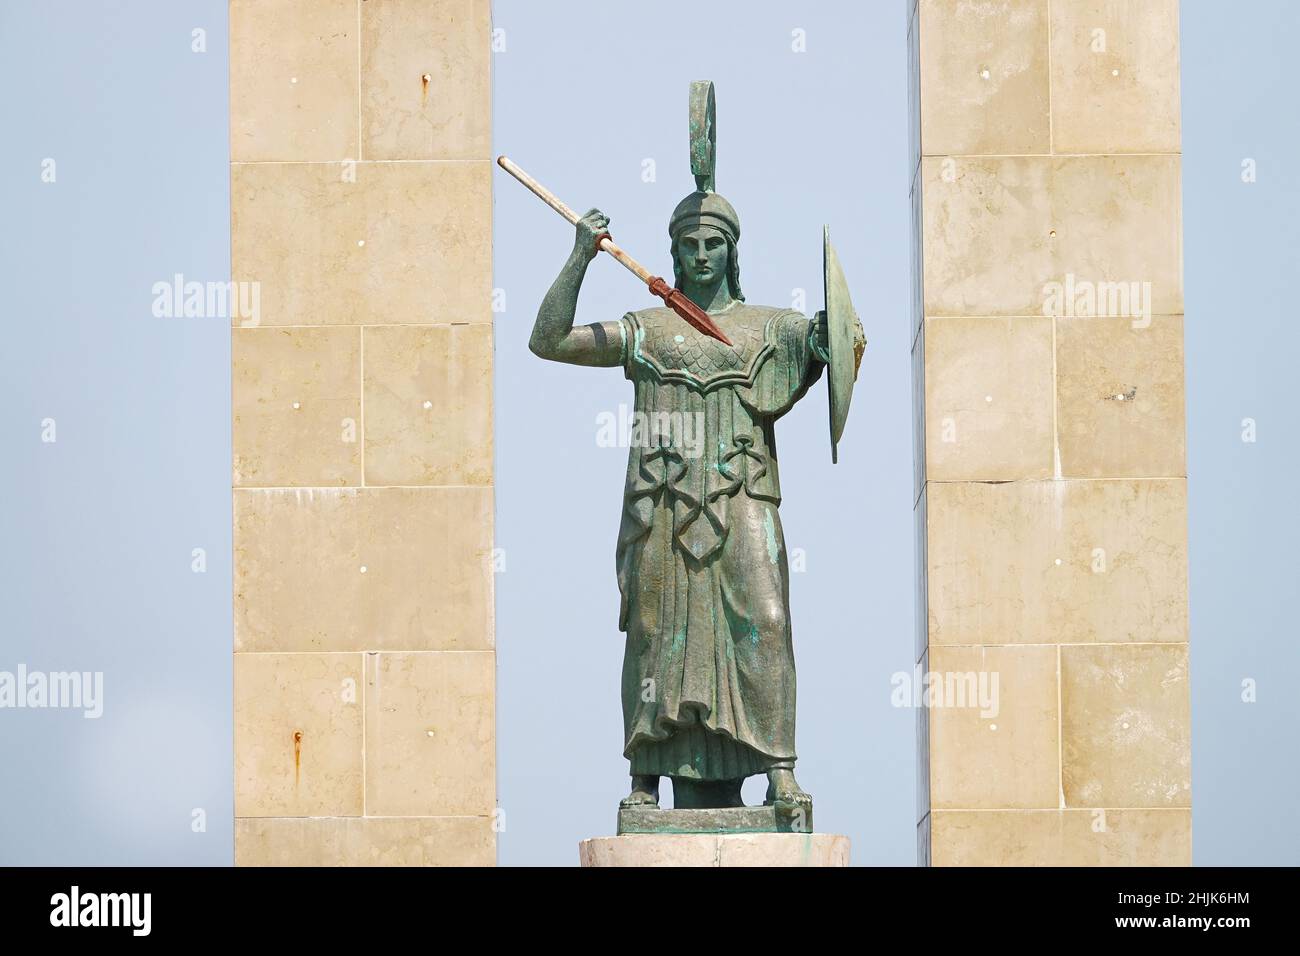 Statue de la déesse Athena et monument à Vittorio Emanuele à l'Arena dello Stretto à Reggio Calabria, Italie.Reggio Calabria, Italie - juillet 2021 Banque D'Images